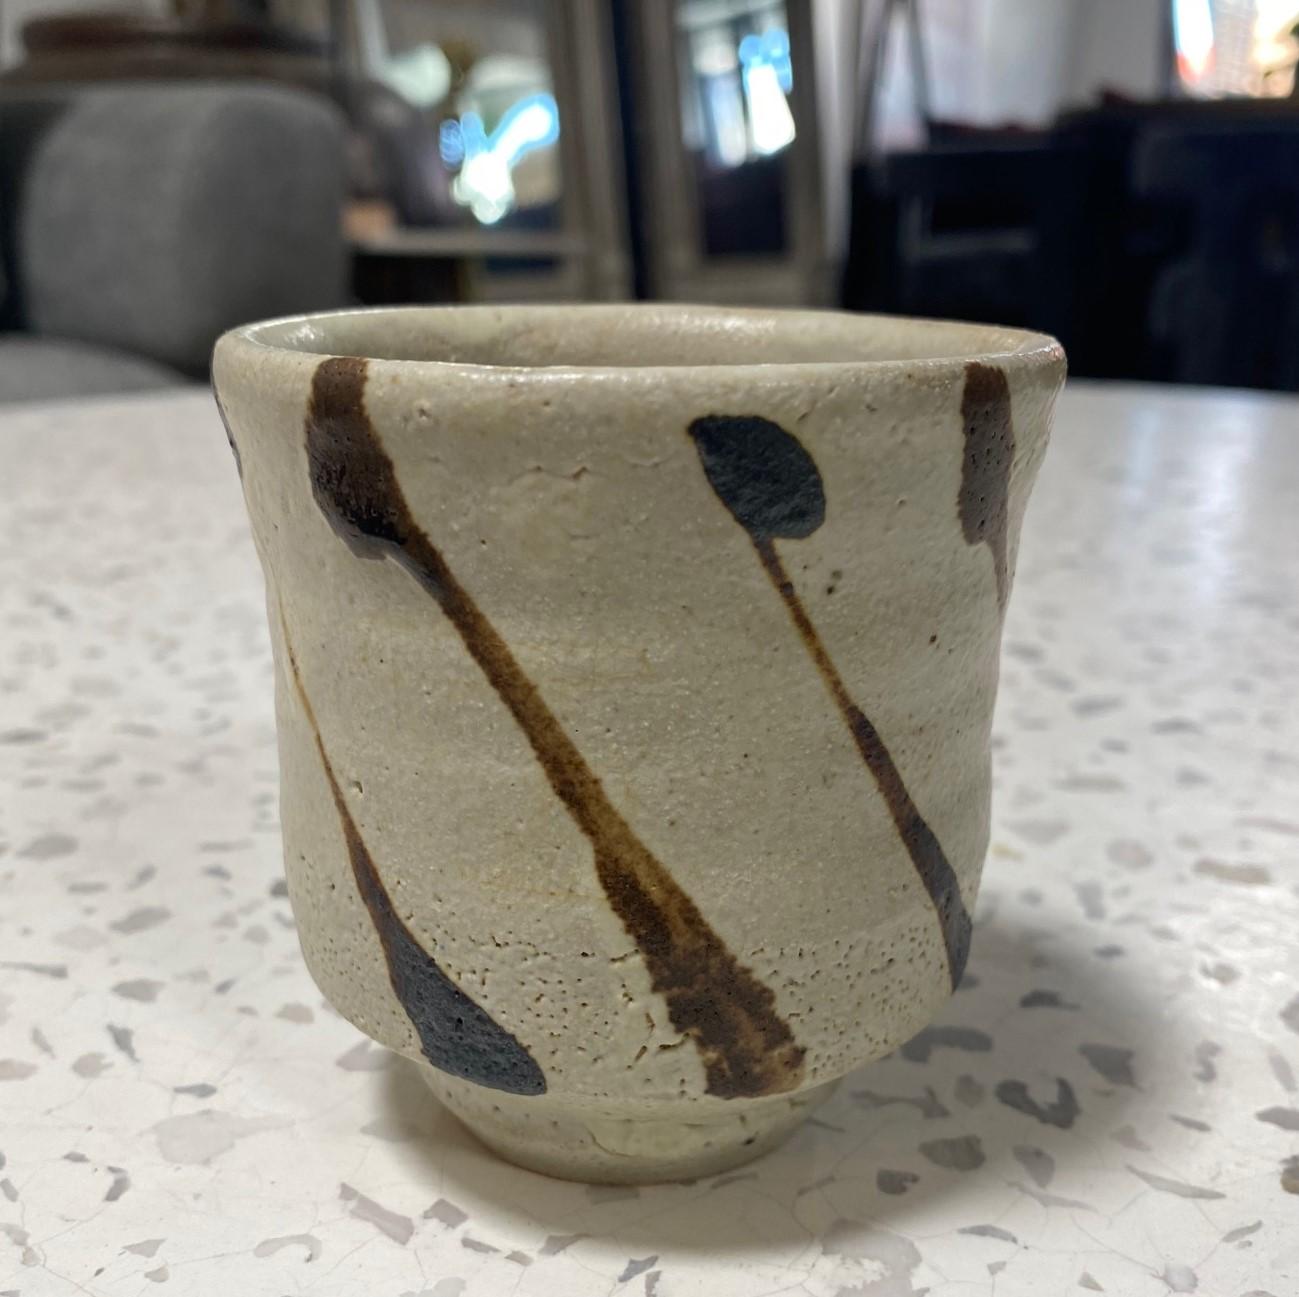 Une exquise tasse à thé Yunomi rayée, magnifiquement fabriquée et conçue par le maître potier japonais Shoji Hamada, avec son émail nuka sur la poterie en grès Mashiko et un motif en fer peint à la main. Une œuvre unique. Il est rare de trouver une